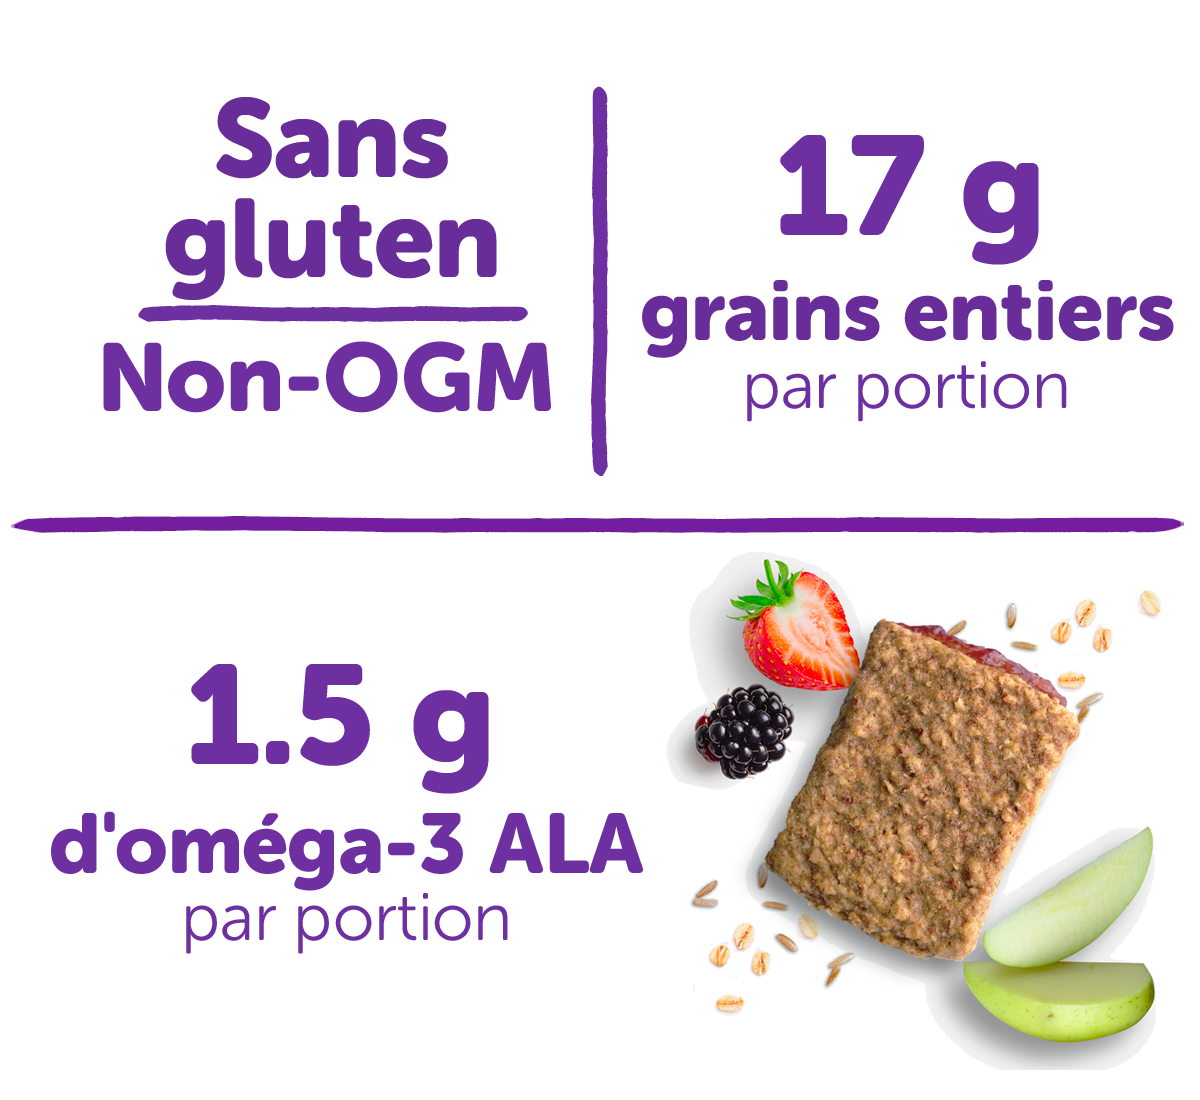 Sans gluten, non-OGM, 17 g de grains entiers par portion, 1.5 g d'omega-3 ALA par portion